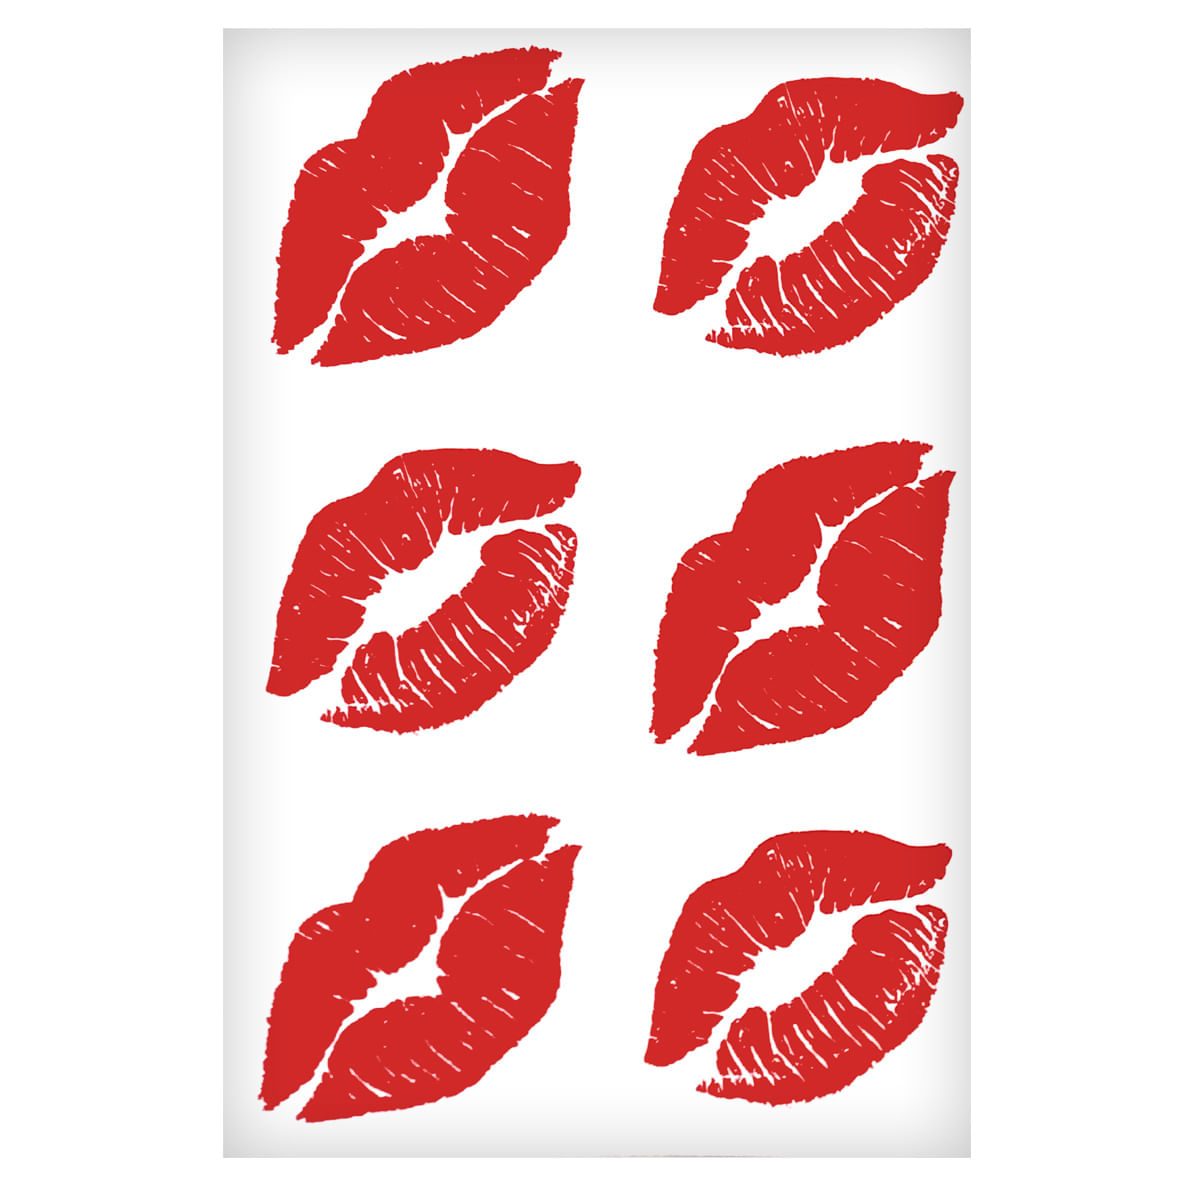 Sexy Tatoo Cartela de Tatuagens Temporárias Beijo 15 x 10 cm Sedux